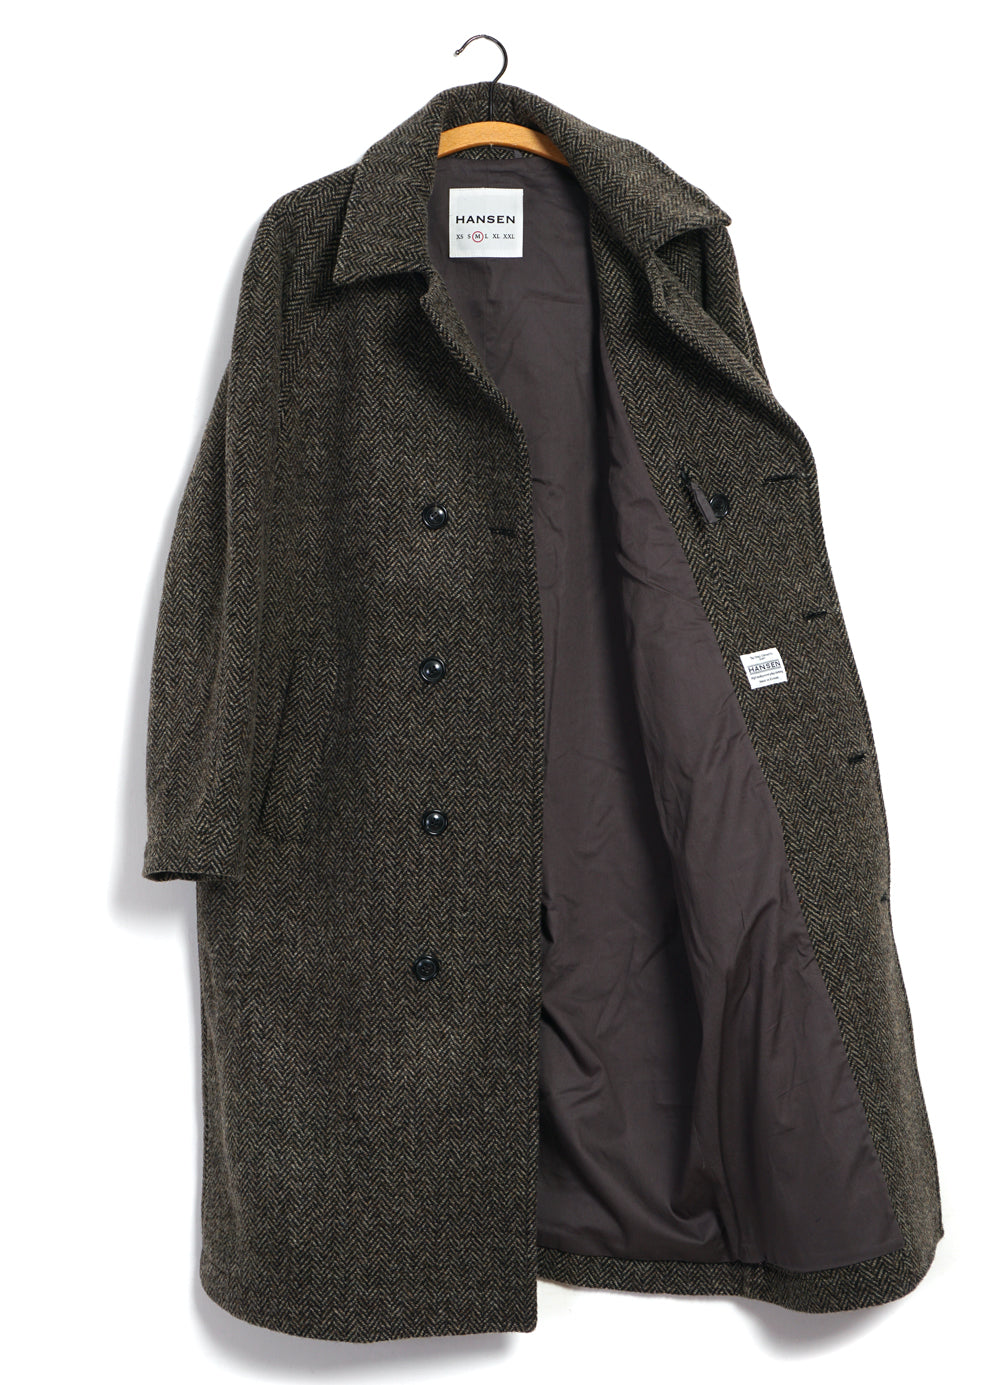 SIGURD | Long Lined Wool Coat | Brown Tweed